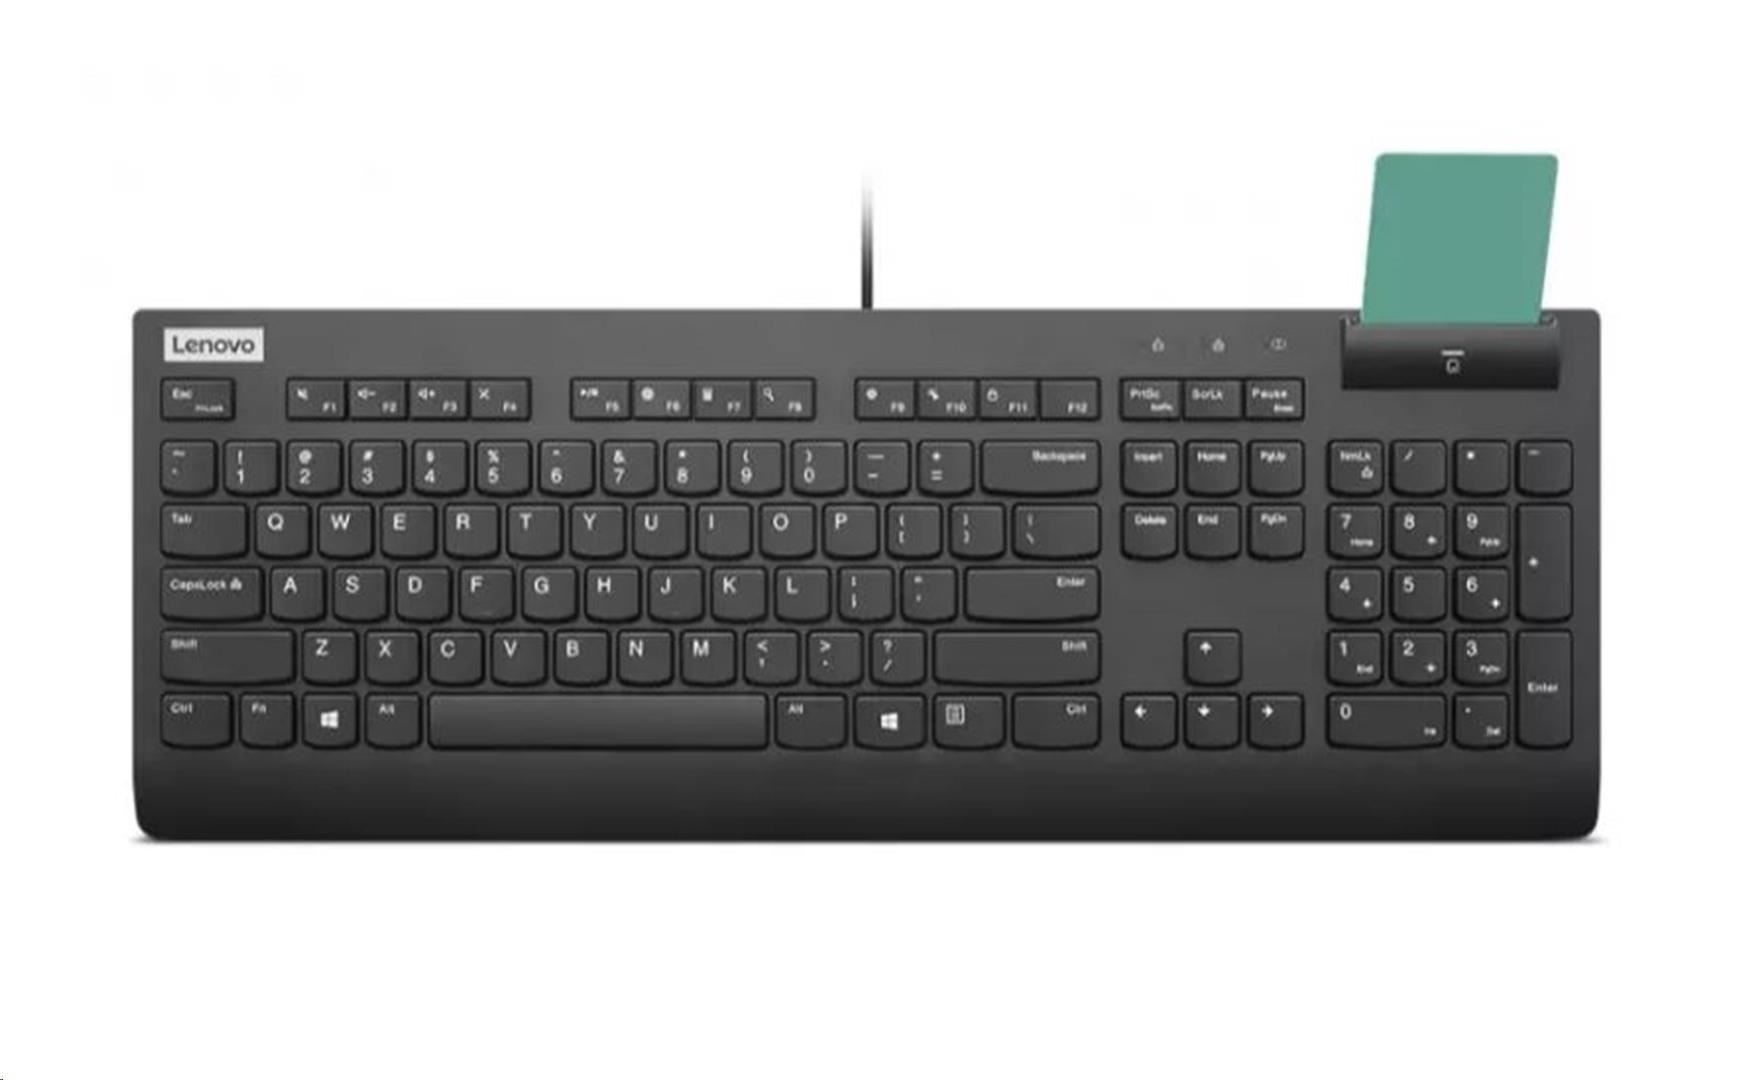 LENOVO klávesnice drátová Smartcard Keyboard II CZ/ SK - USB,  černá0 